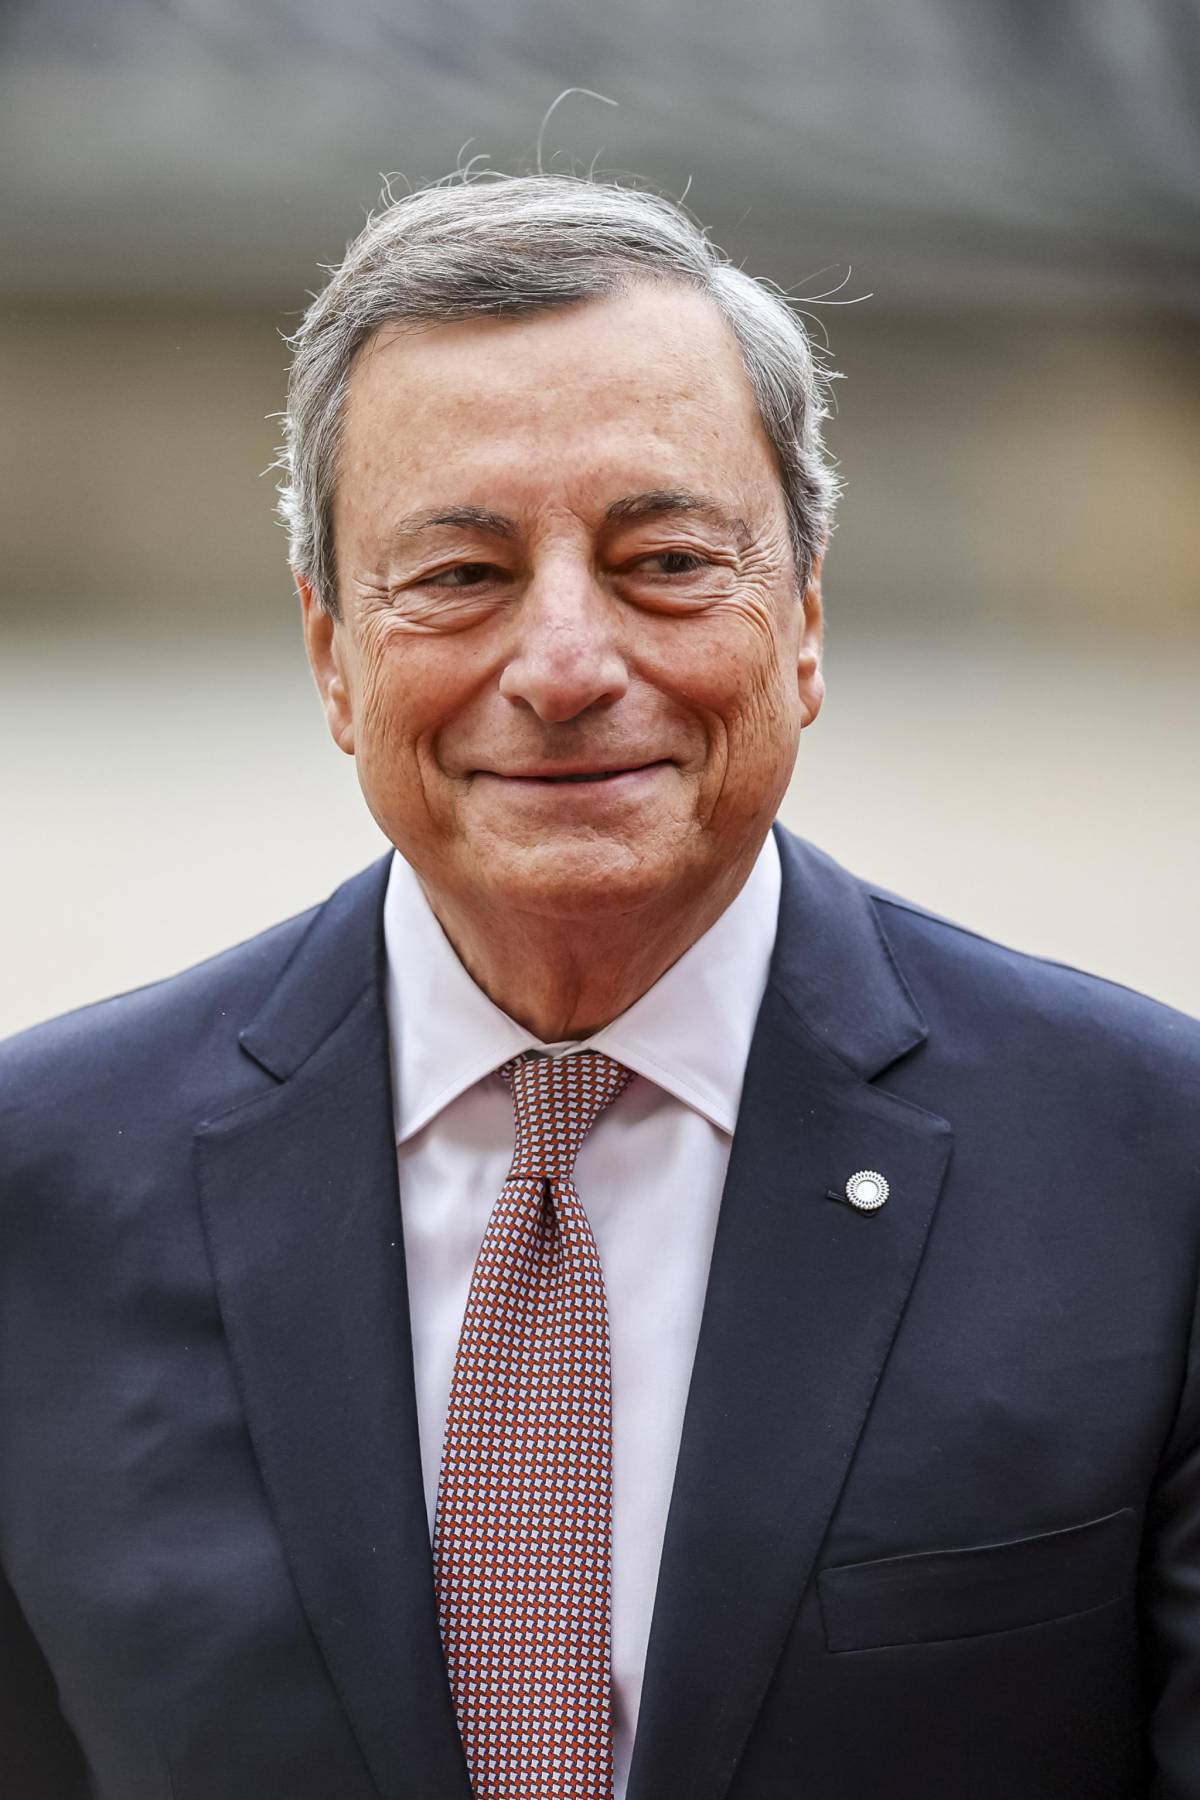 L'ultimo blitz di Draghi sui diritti Lgbt. Rabbia di Fdi: "Grave"